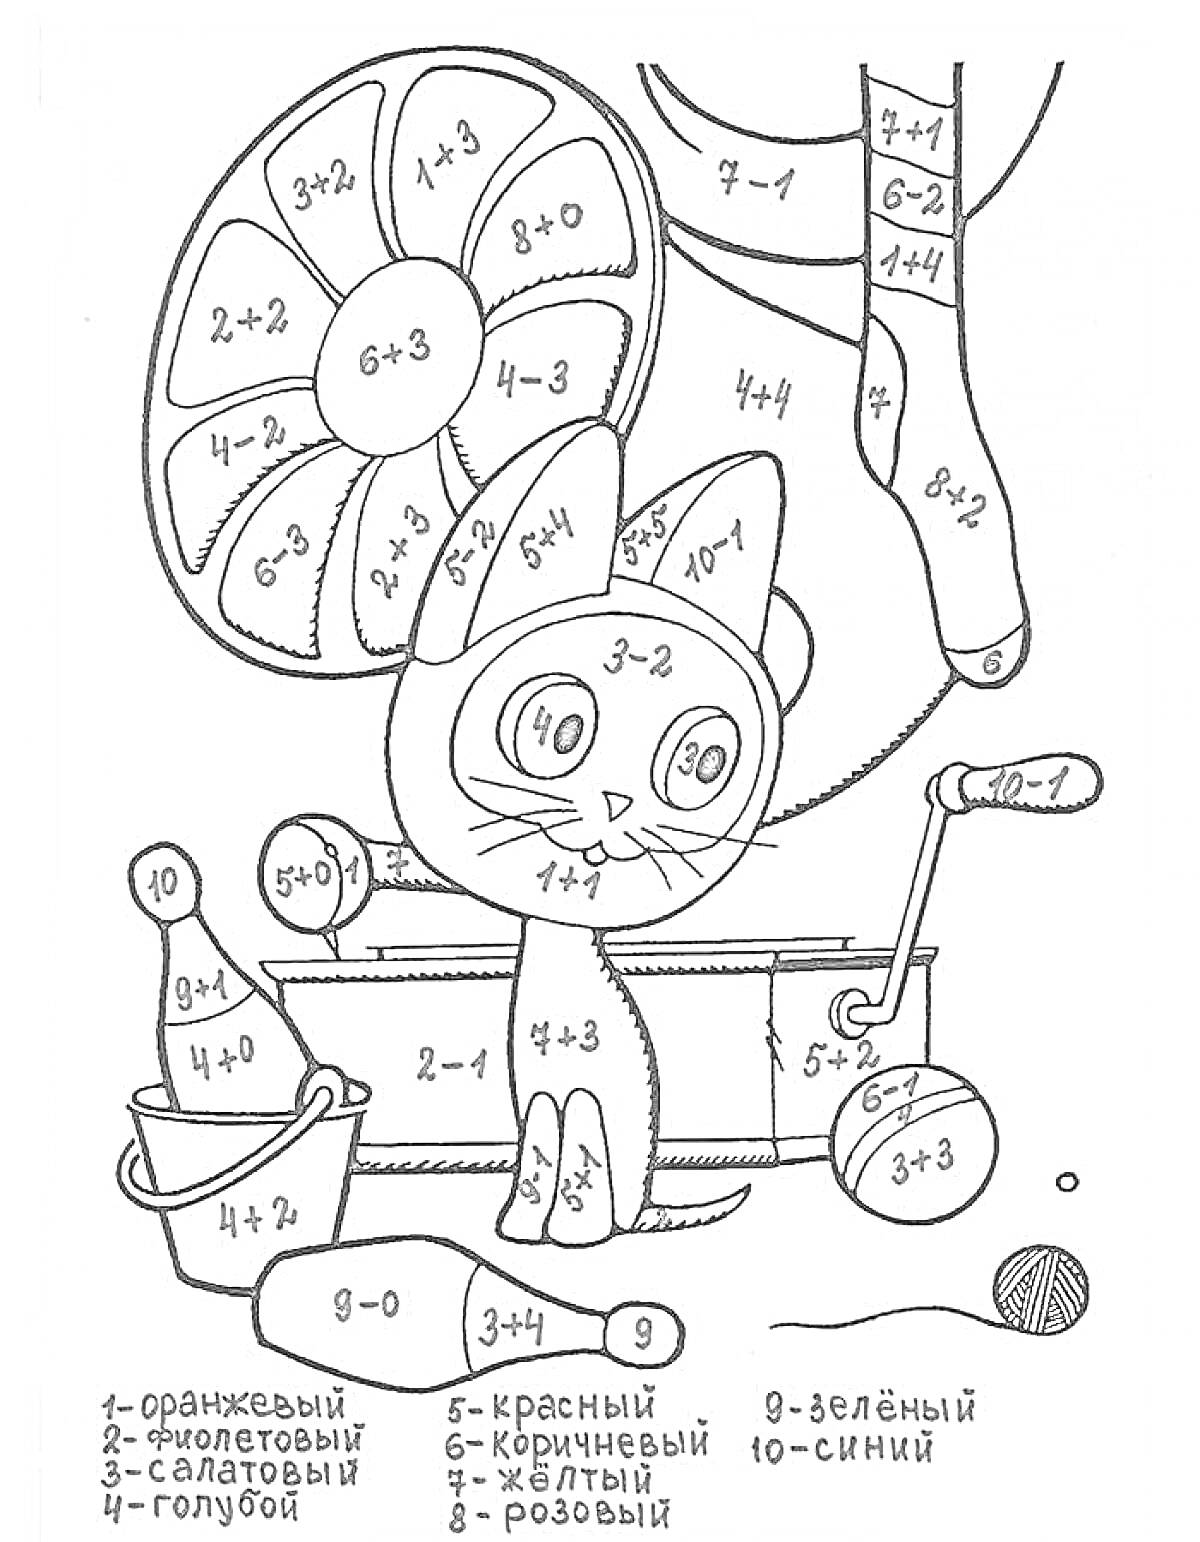 Раскраска Кот на самокате с круглым вертолетным снарядом, ведром, лопаткой и мячиком, разукраска по математическим примерам